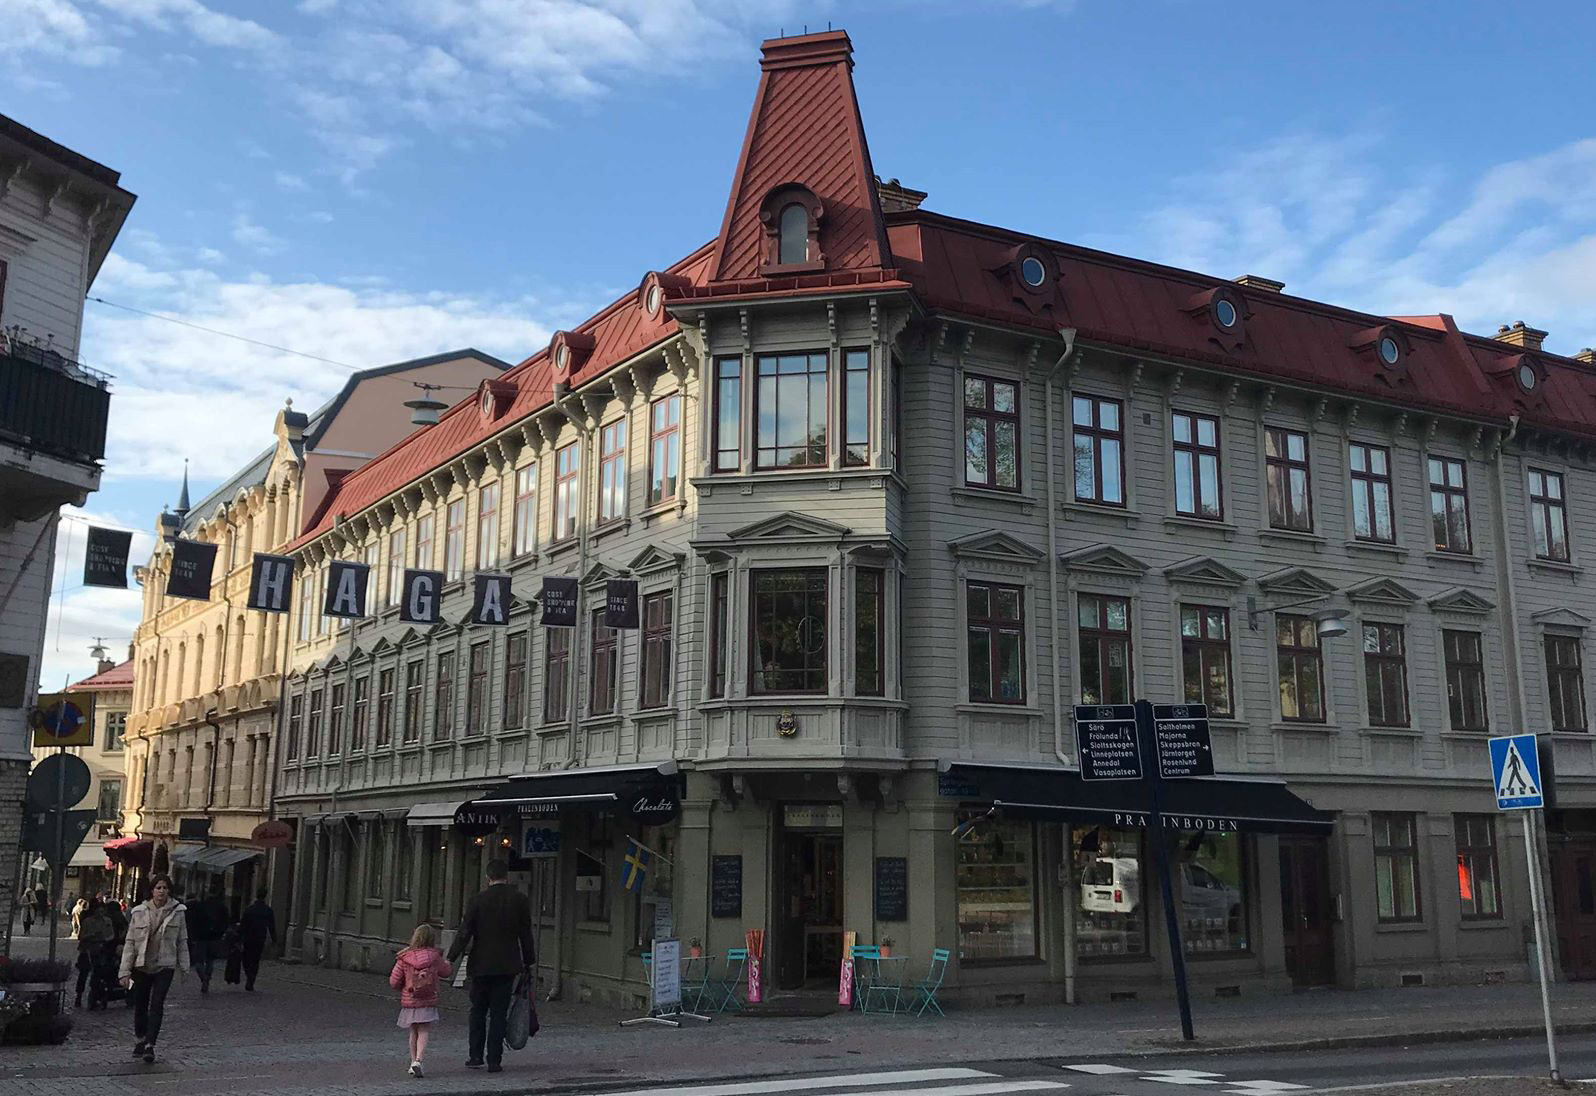 Är Landshövdingehuset Pralinboden i Haga i Göteborg Sveriges vackraste byggnad genom tiderna?